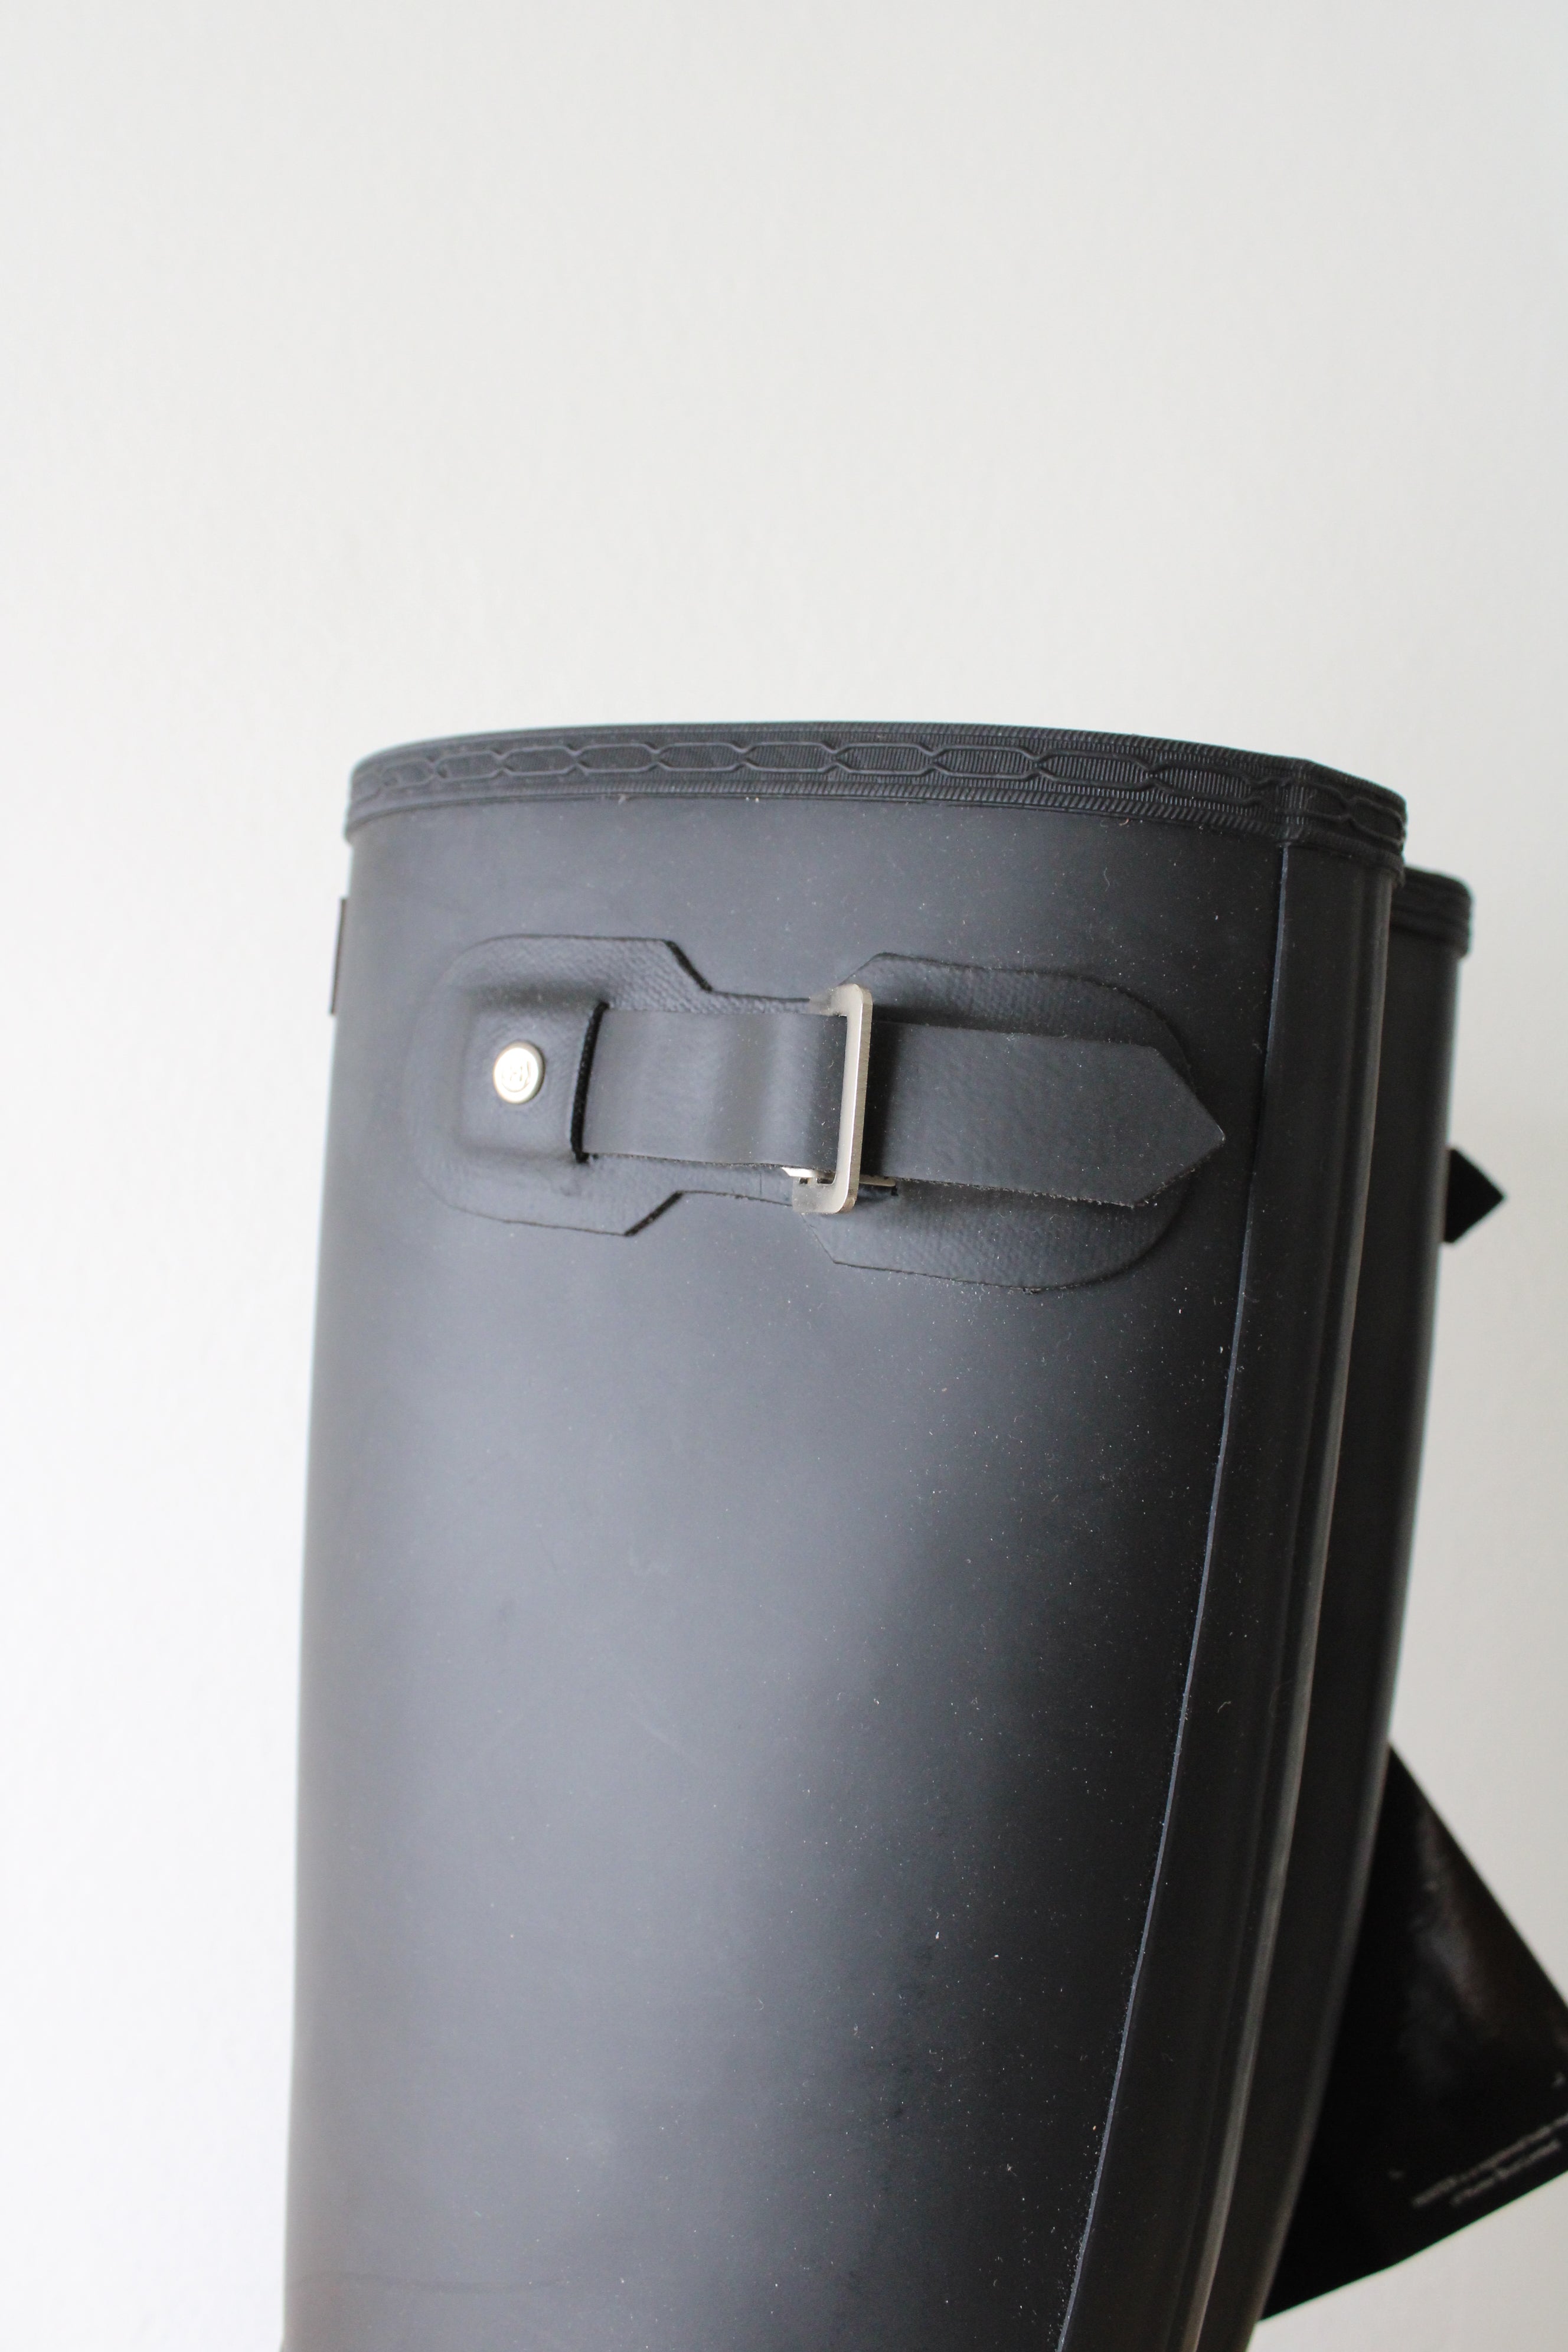 NEW Hunter Original Back Adjustable Tall Black Rain Boot | Size 8F/7M